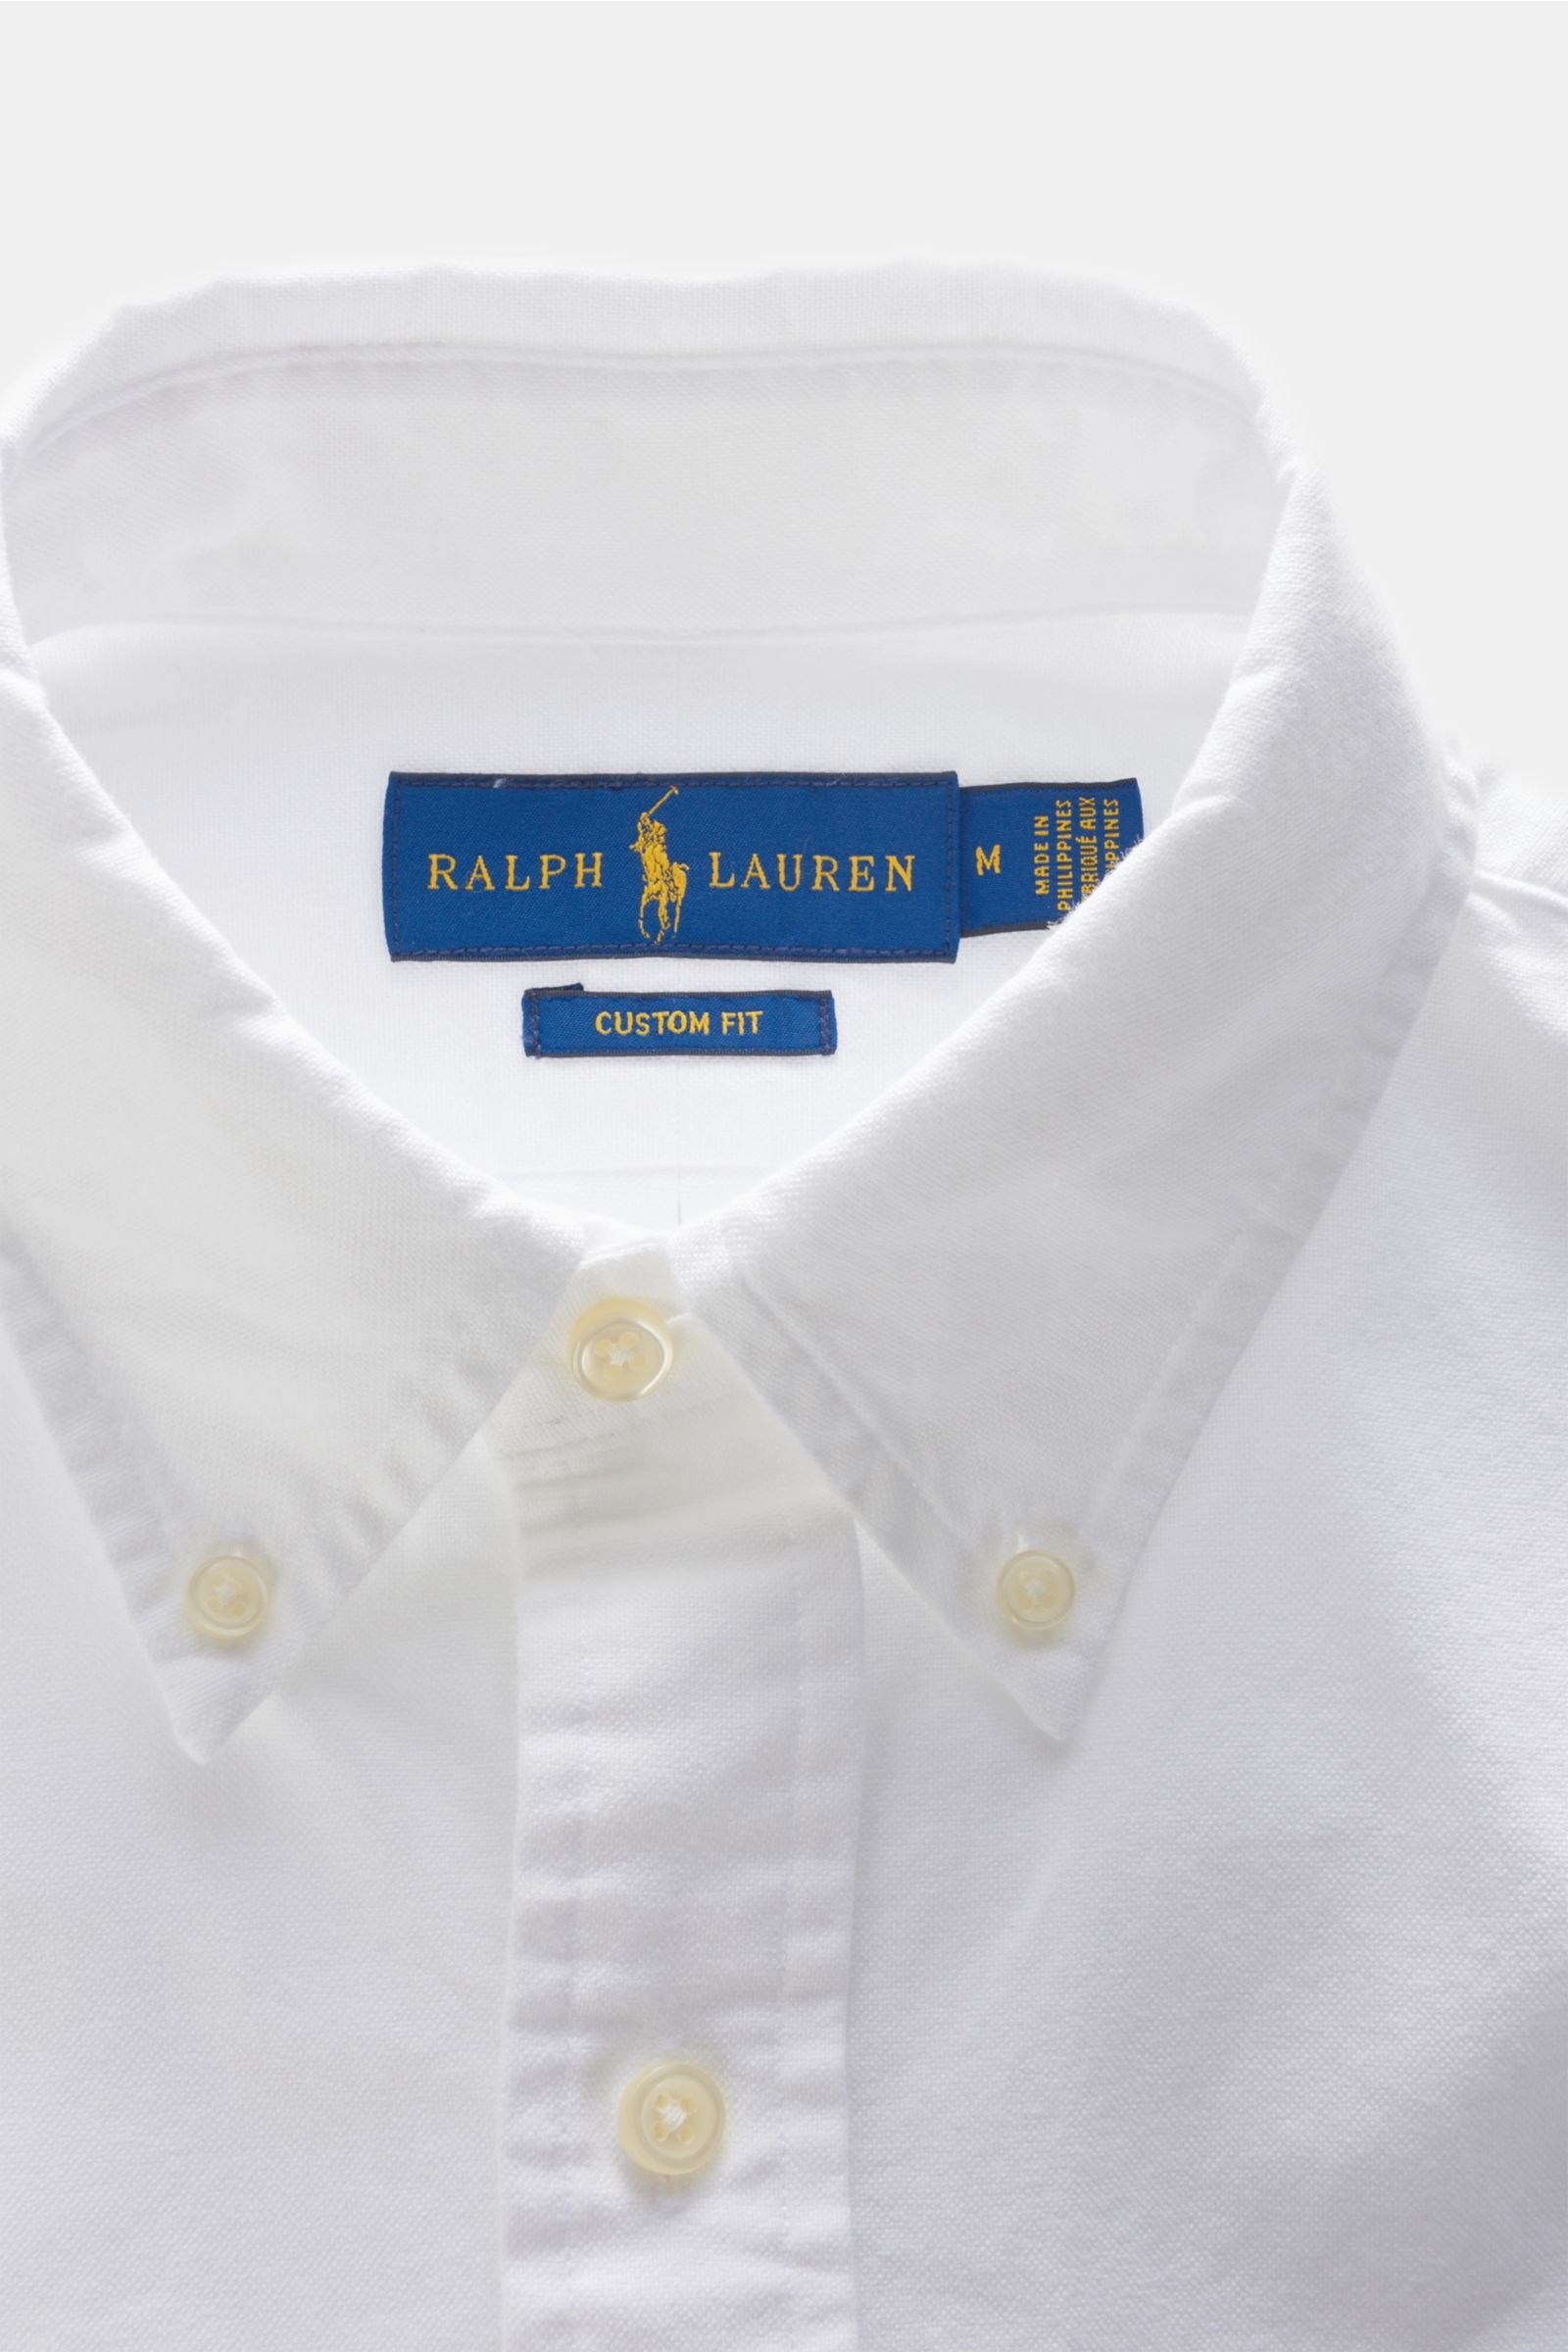 ralph lauren shirt buttons